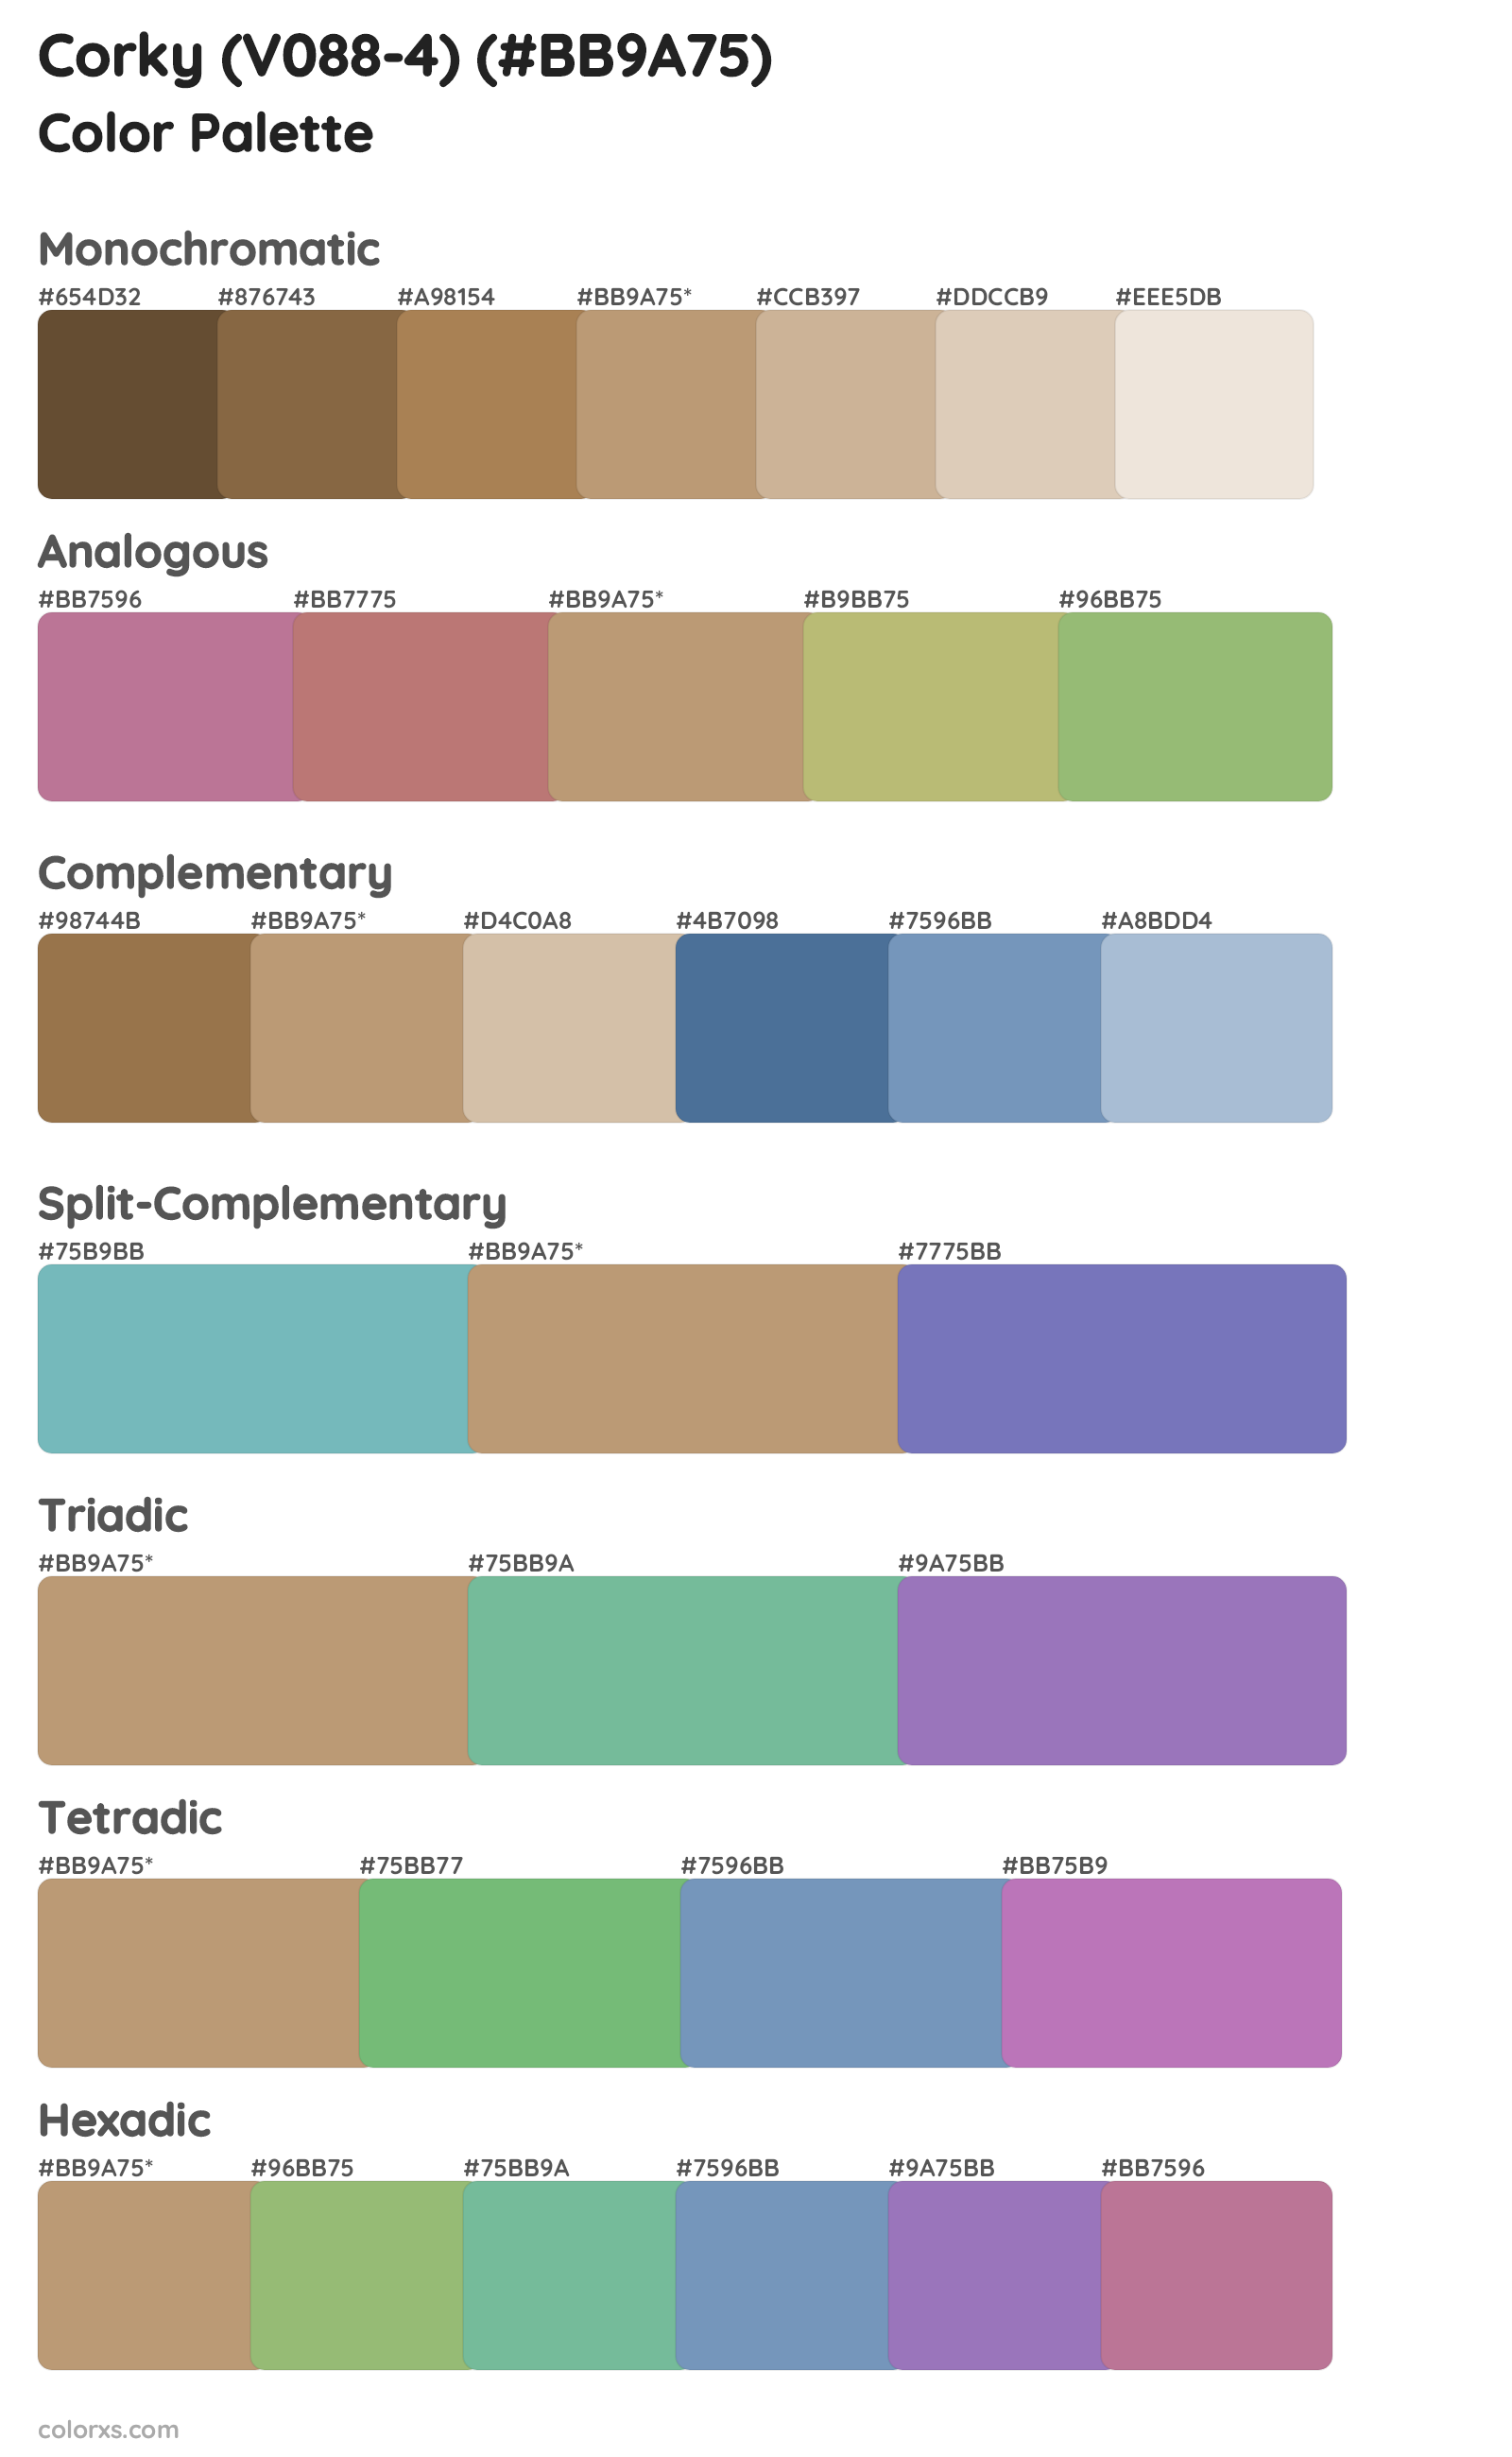 Corky (V088-4) Color Scheme Palettes